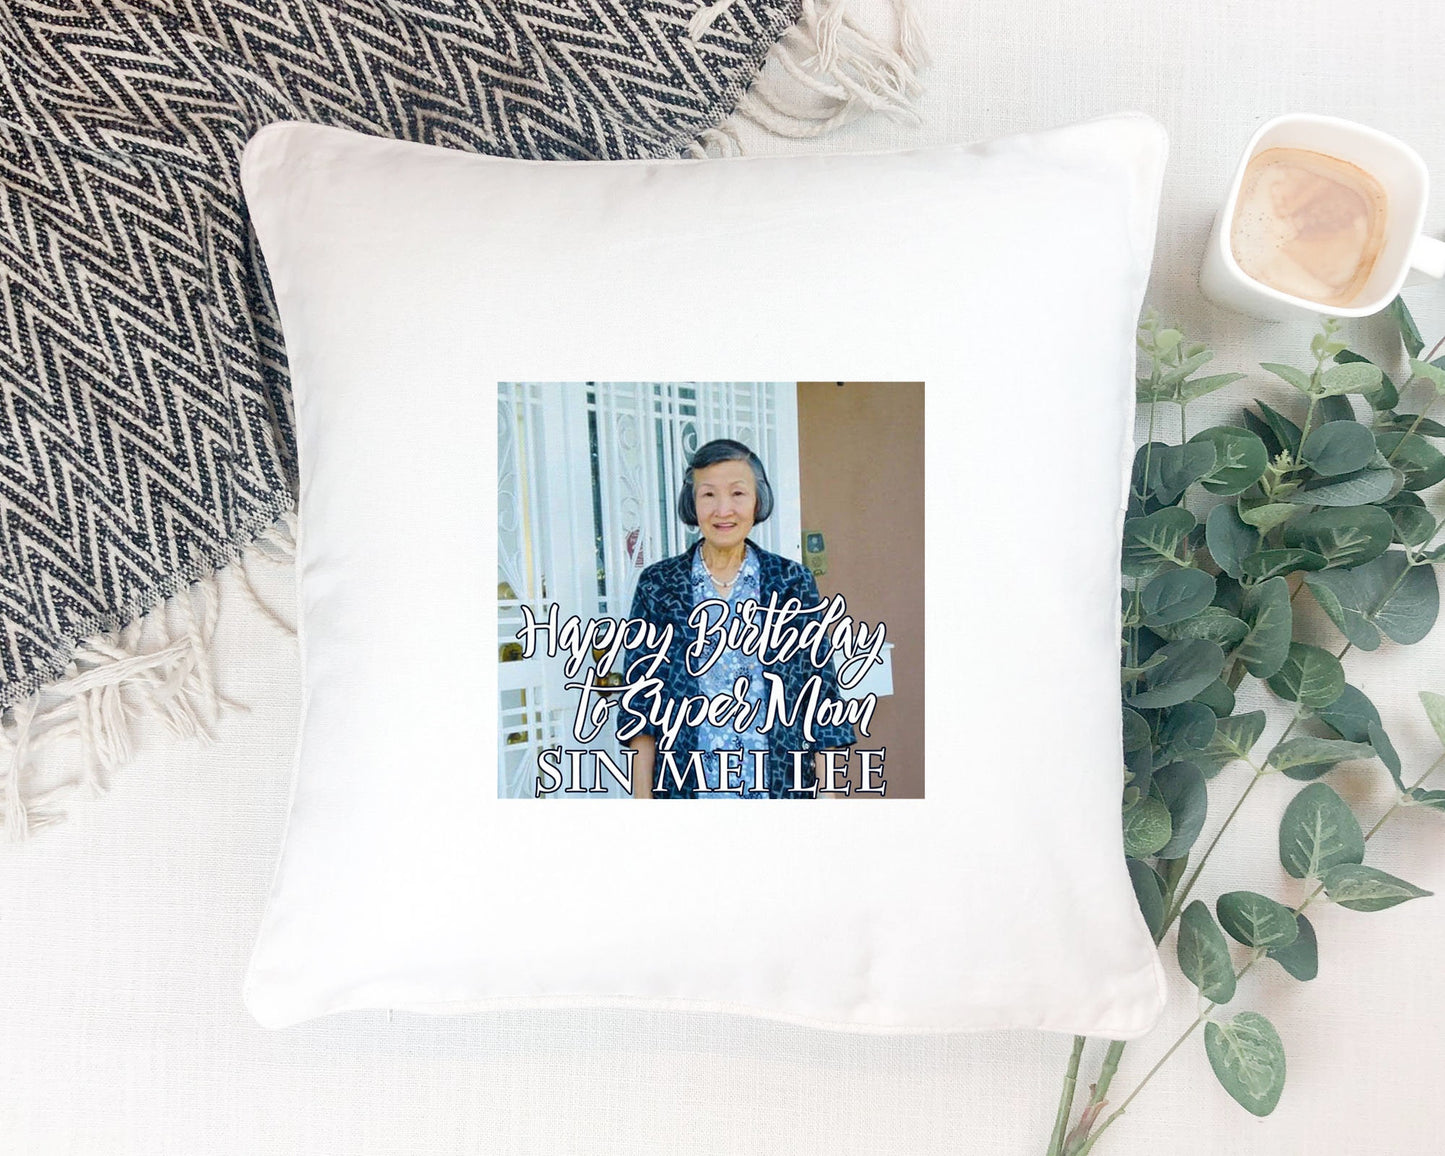 Custom Pillowcase Gift for  Friends, Custom Keepsake Pillow Gift Idea